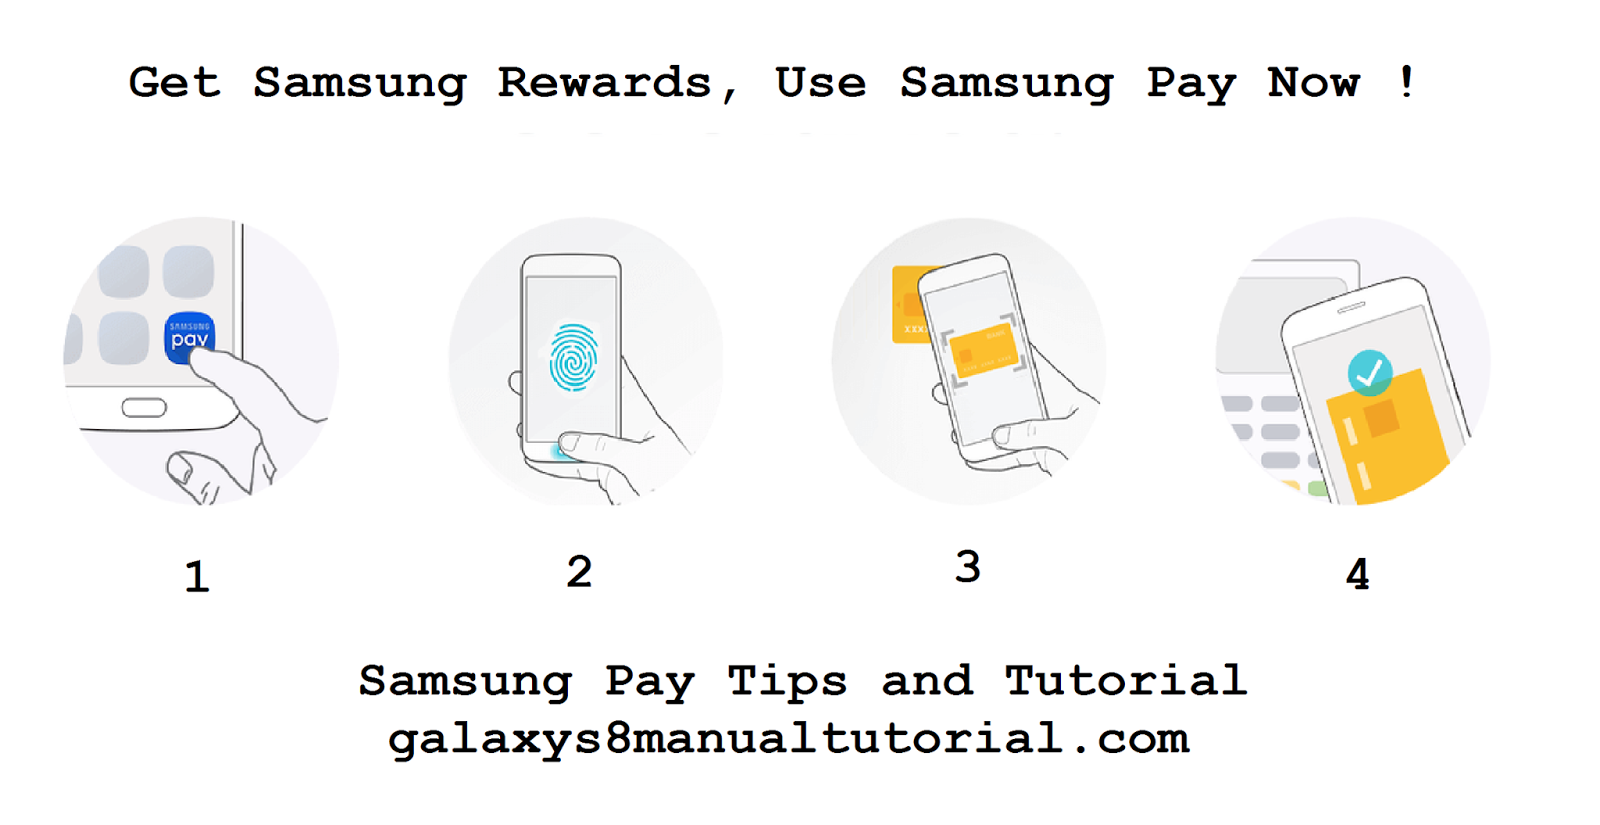 Как оплачивать прикладывая телефон. Приложите карту к телефону. Samsung pay отпечаток пальца. Бесконтактная оплата картой с телефона. Приложить карту к телефону для оплаты.